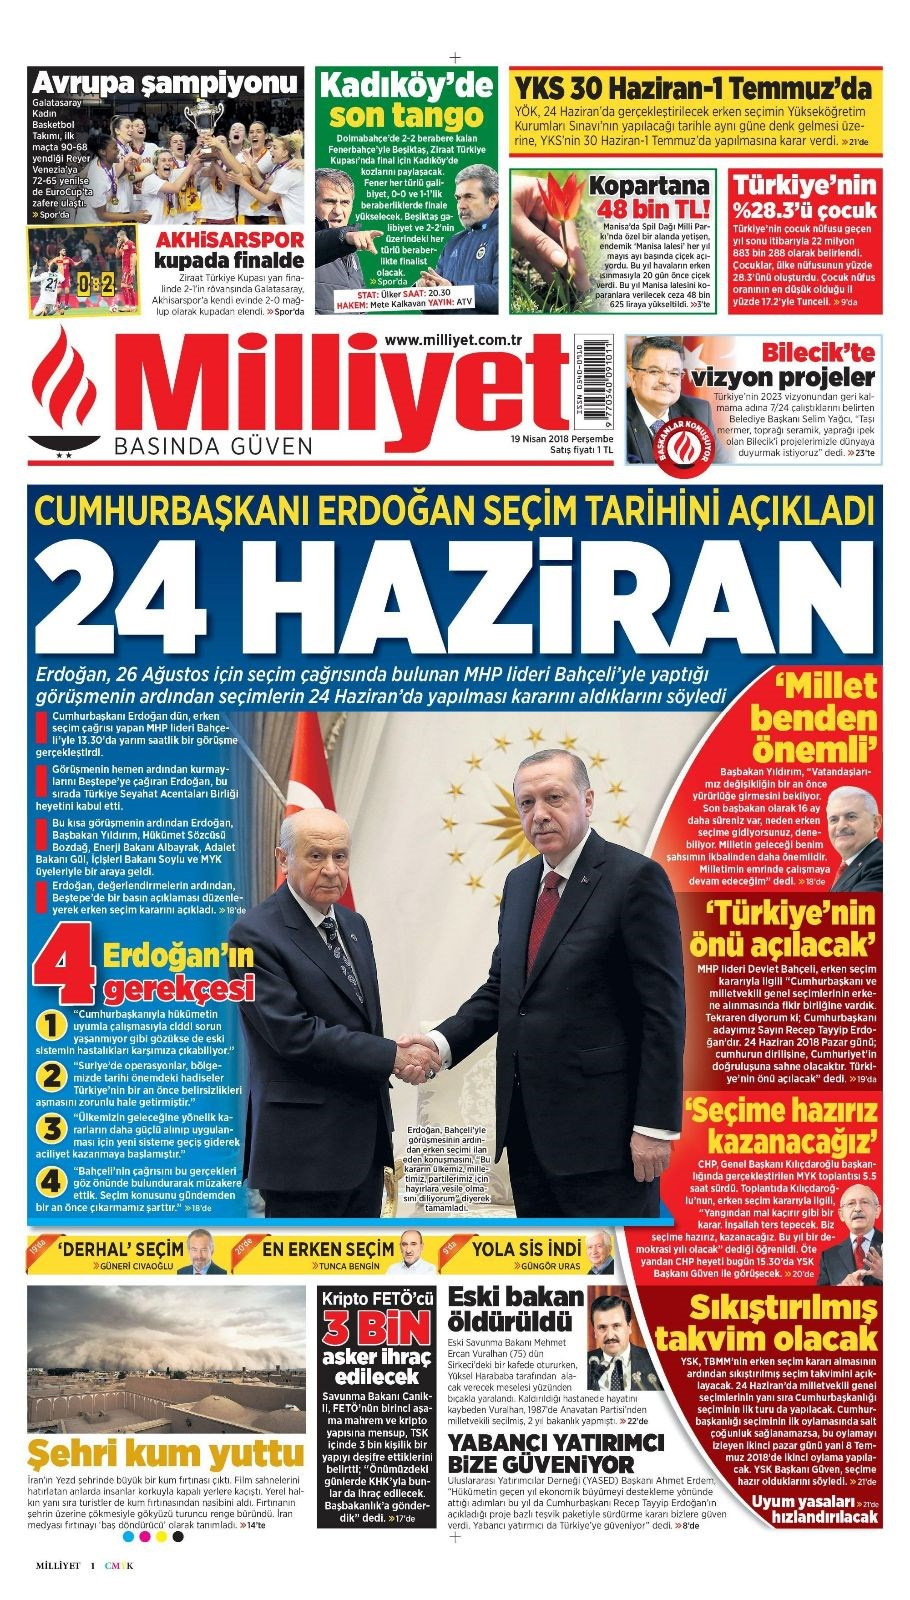 Gazete manşetleri 19 Nisan 2018 Hürriyet - Sözcü - Habertürk